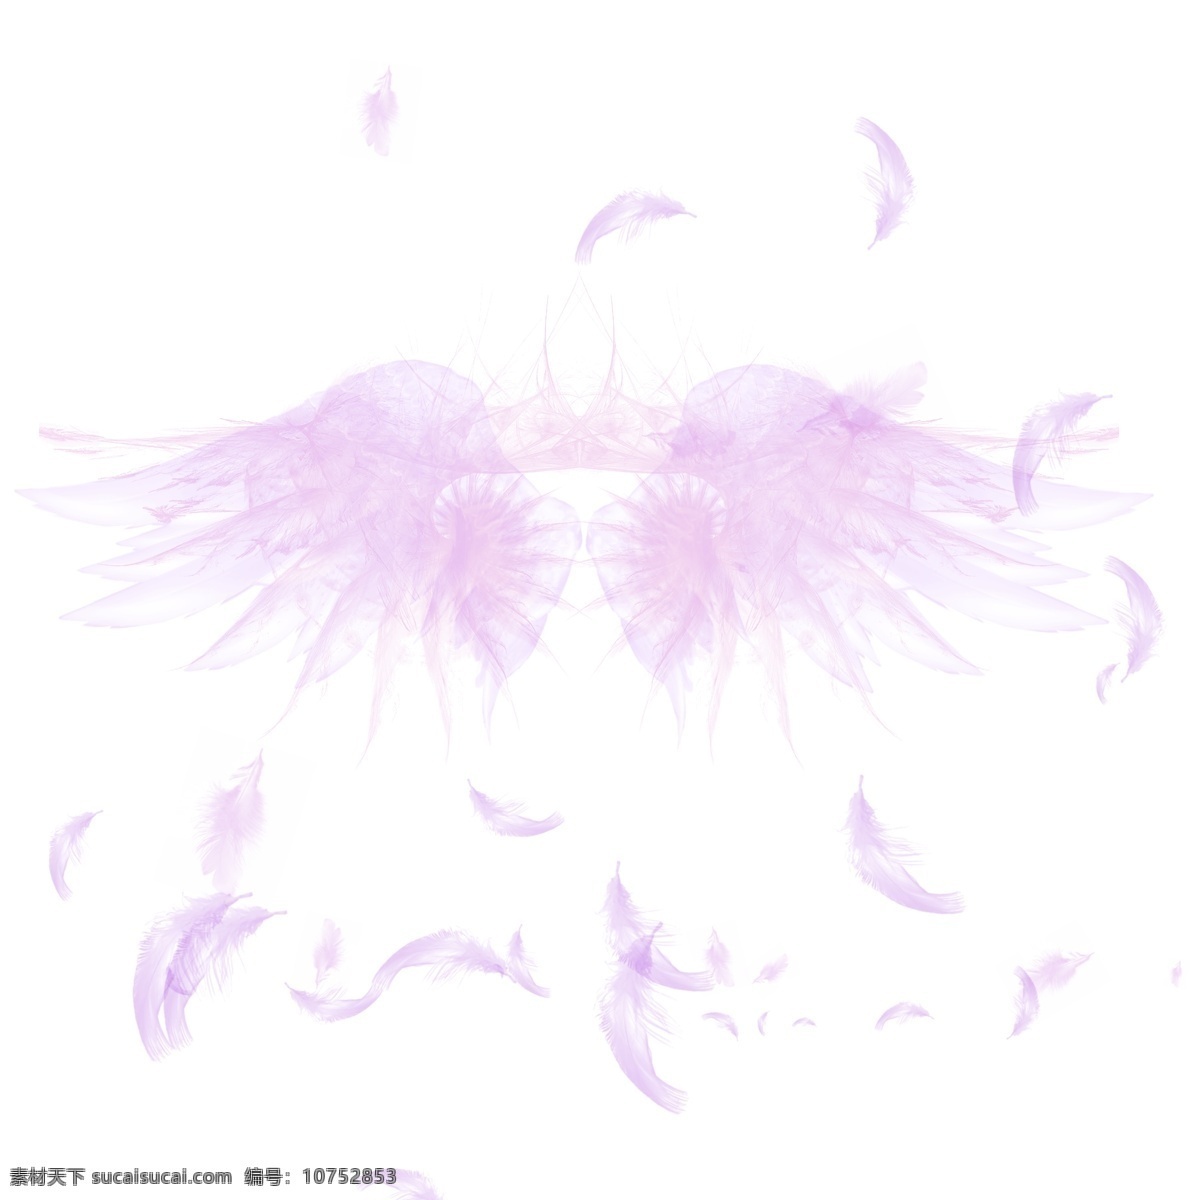 时尚 翅膀 羽毛 设计素材 时尚羽毛设计 天使的翅膀 翅膀设计 紫色翅膀设计 翅膀手绘 翅膀背景设计